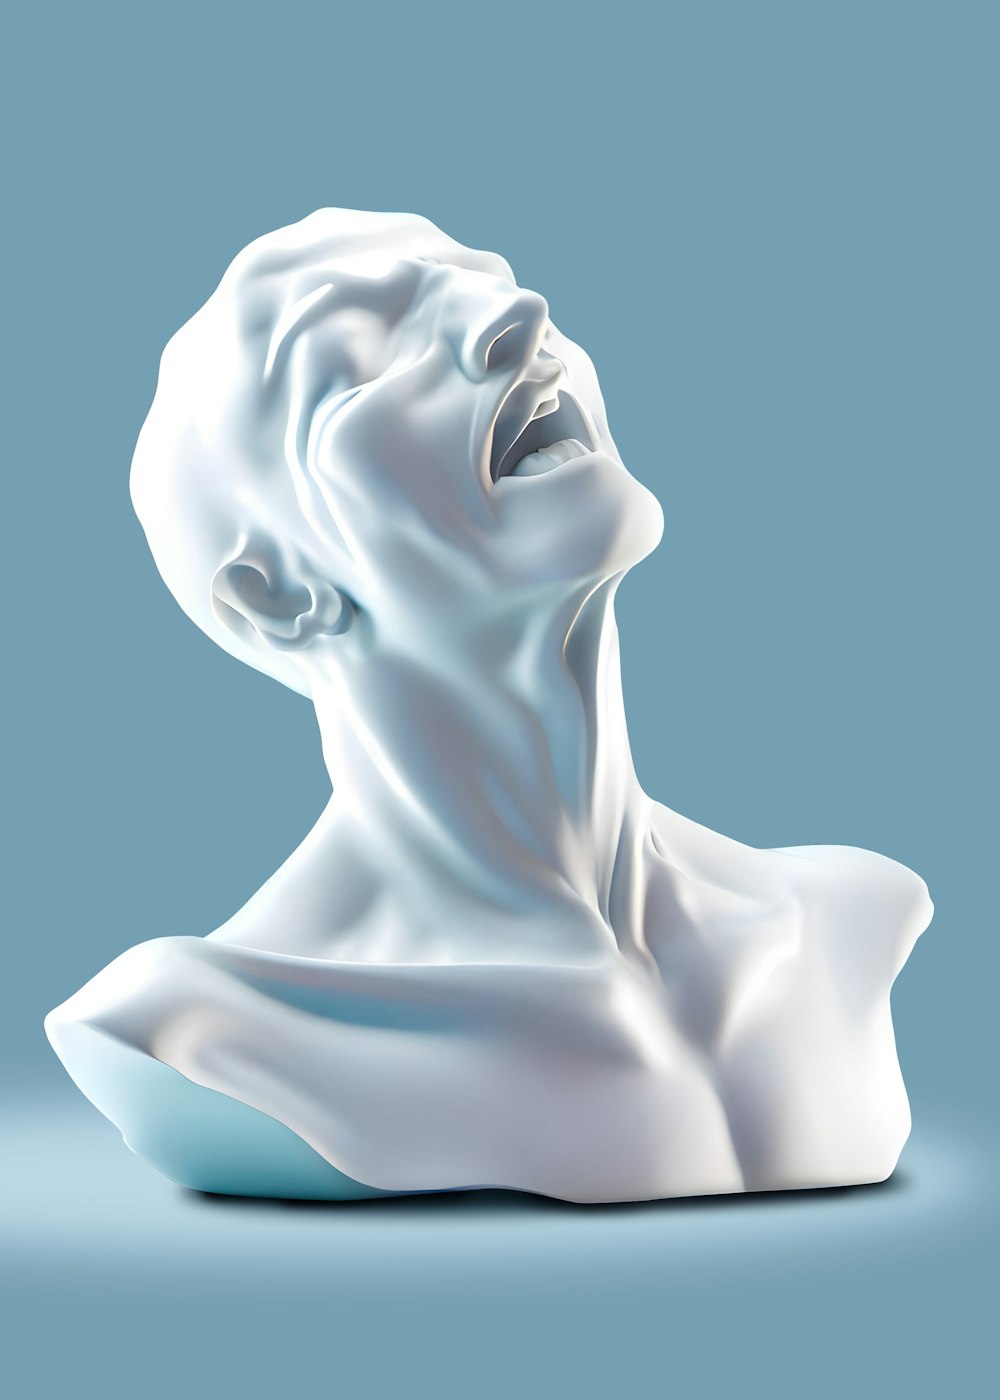 Una escultura blanca de un hombre con la boca abierta